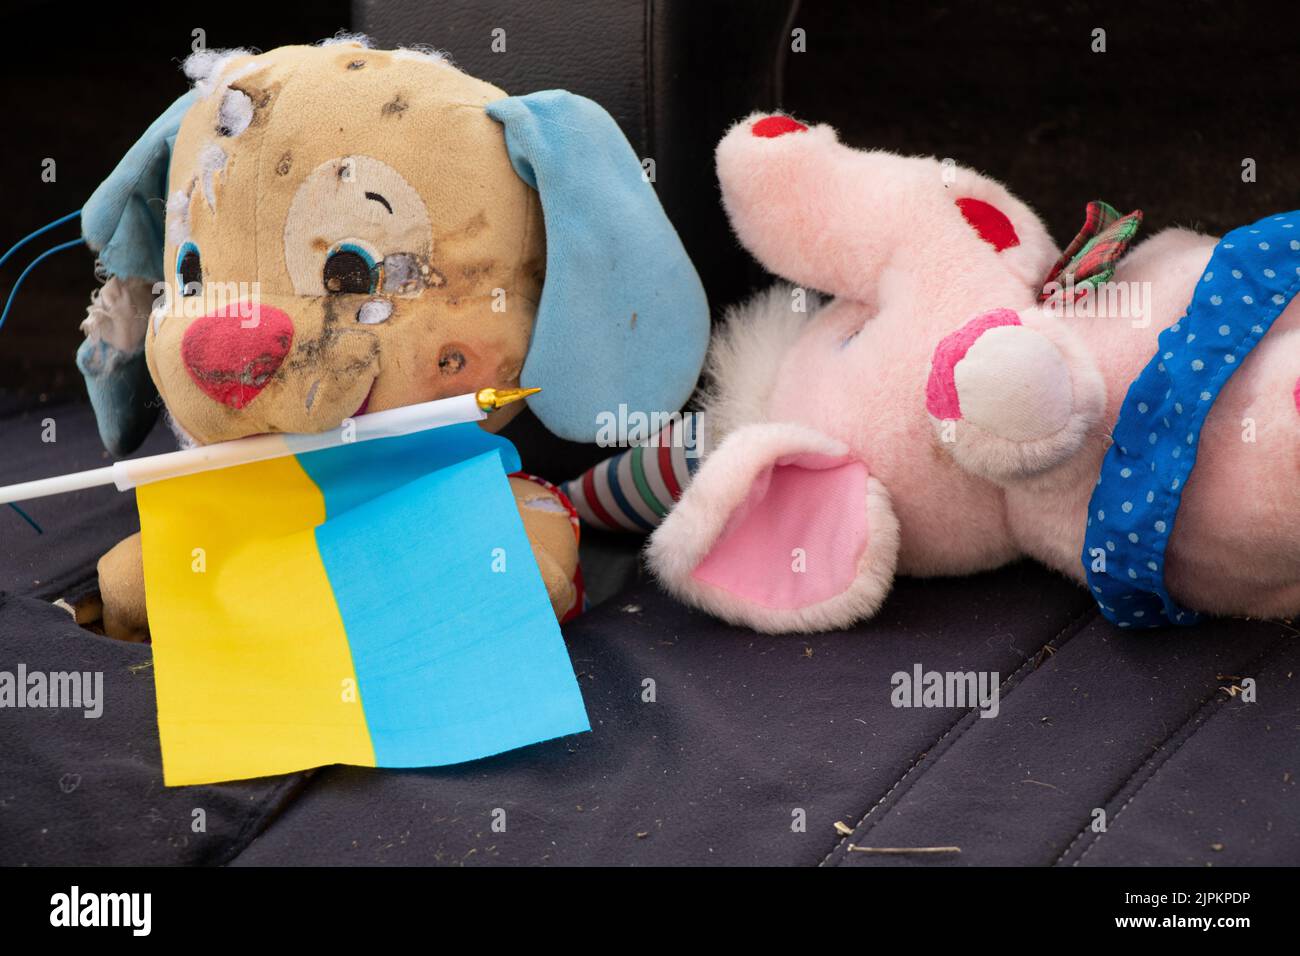 Un jouet sale cassé pour enfants et le drapeau de l'Ukraine se trouvent dans la cour pendant la guerre en Ukraine, la mort d'enfants aux mains du soldie russe Banque D'Images